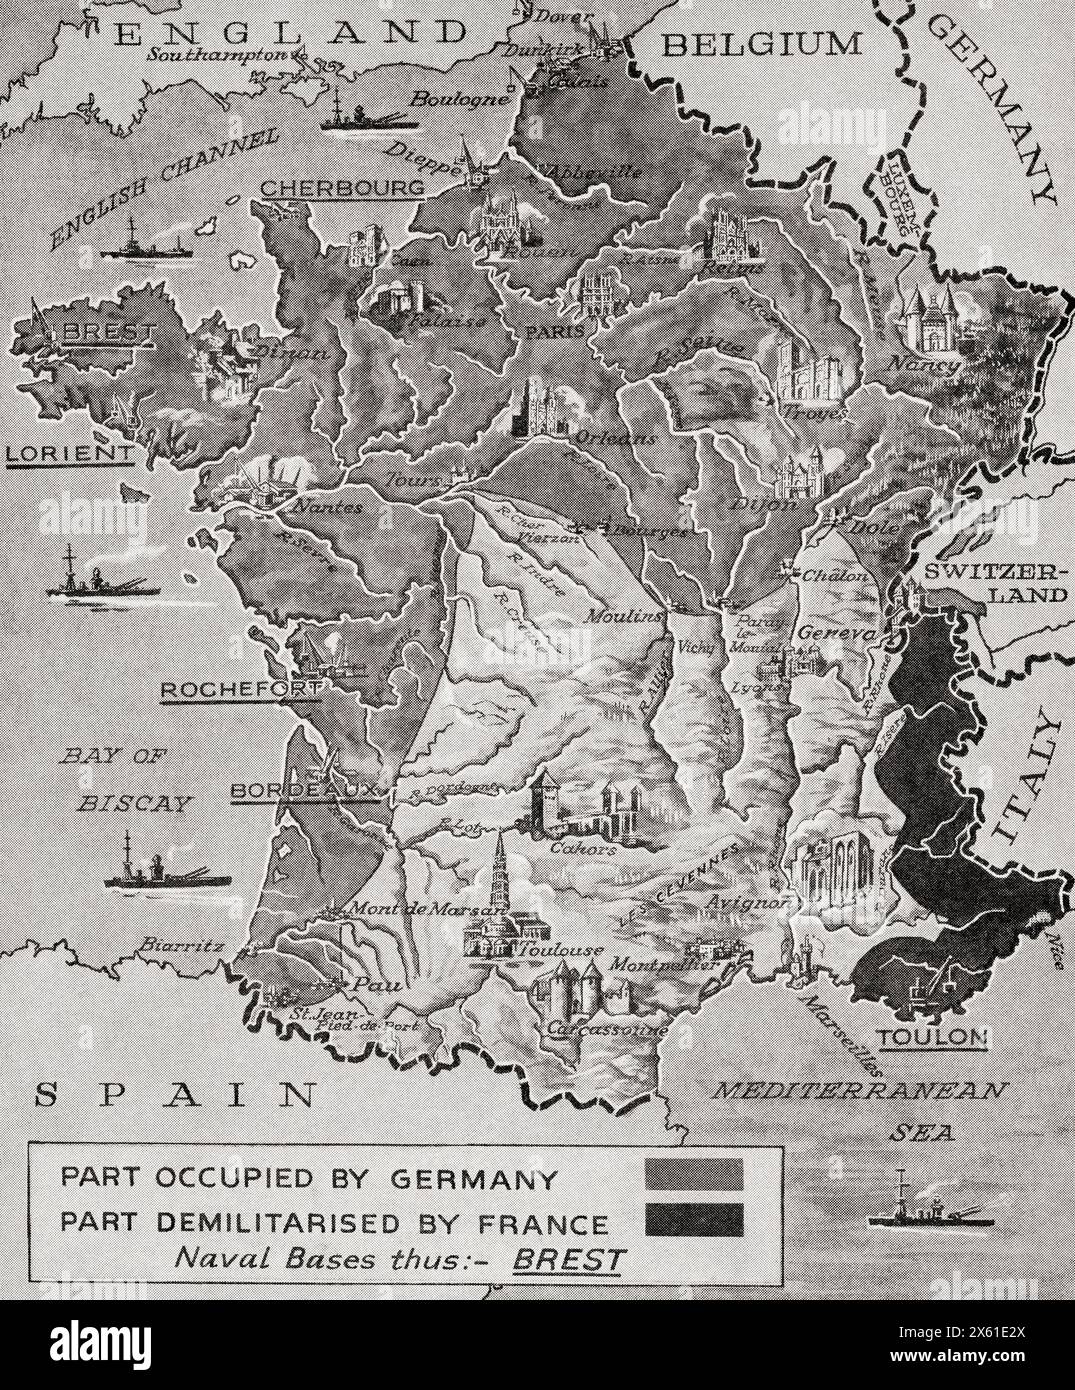 Karte mit der Besetzung und Entmilitarisierung Frankreichs durch Deutschland während des Zweiten Weltkriegs. Aus dem Krieg in Bildern, 1. Jahr. Stockfoto